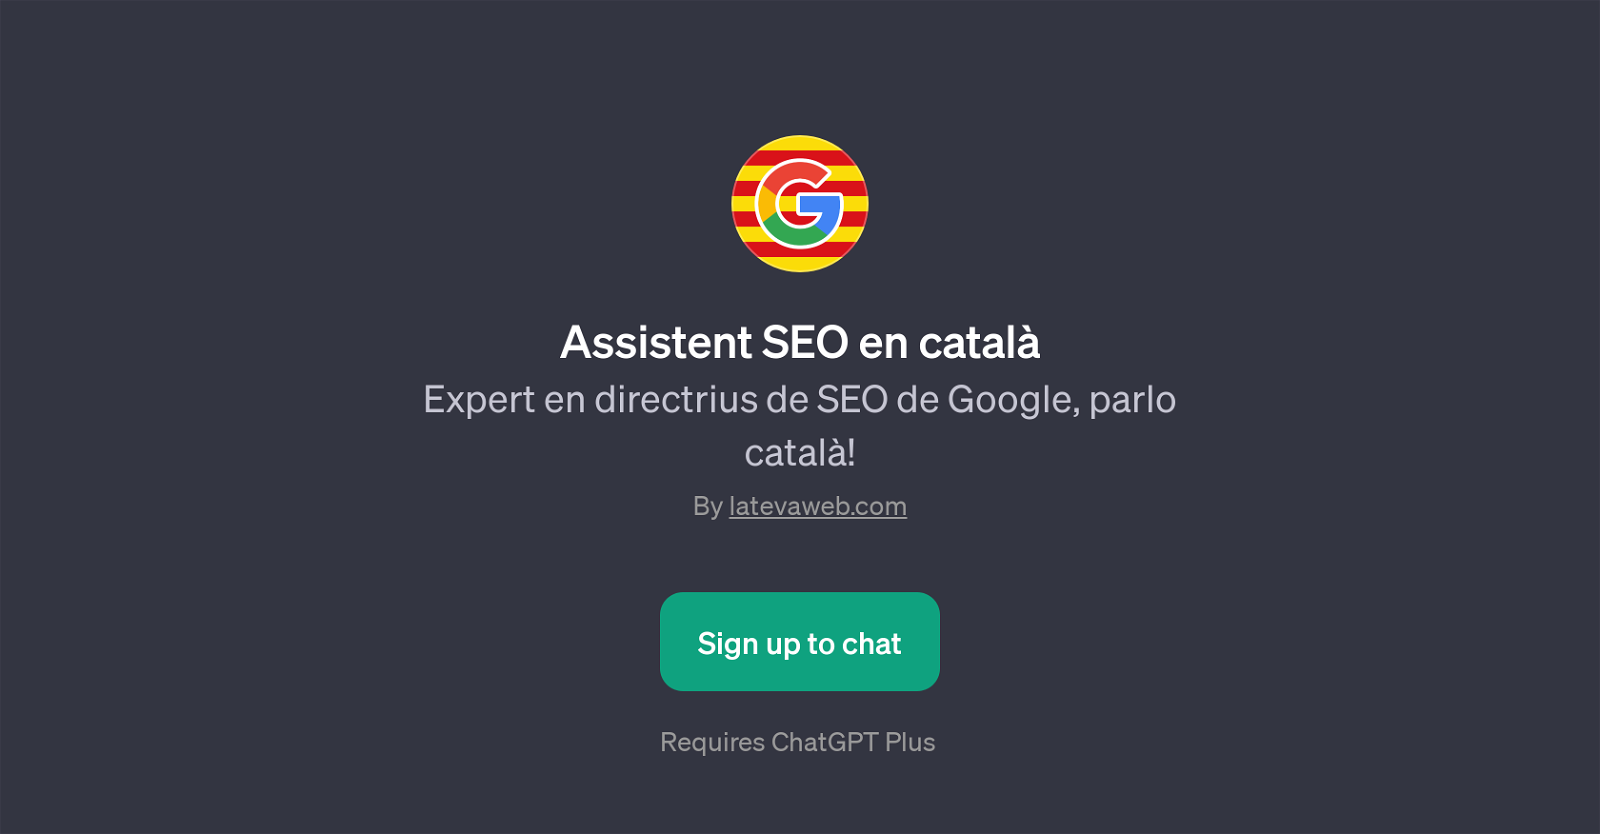 Assistent SEO en catal website